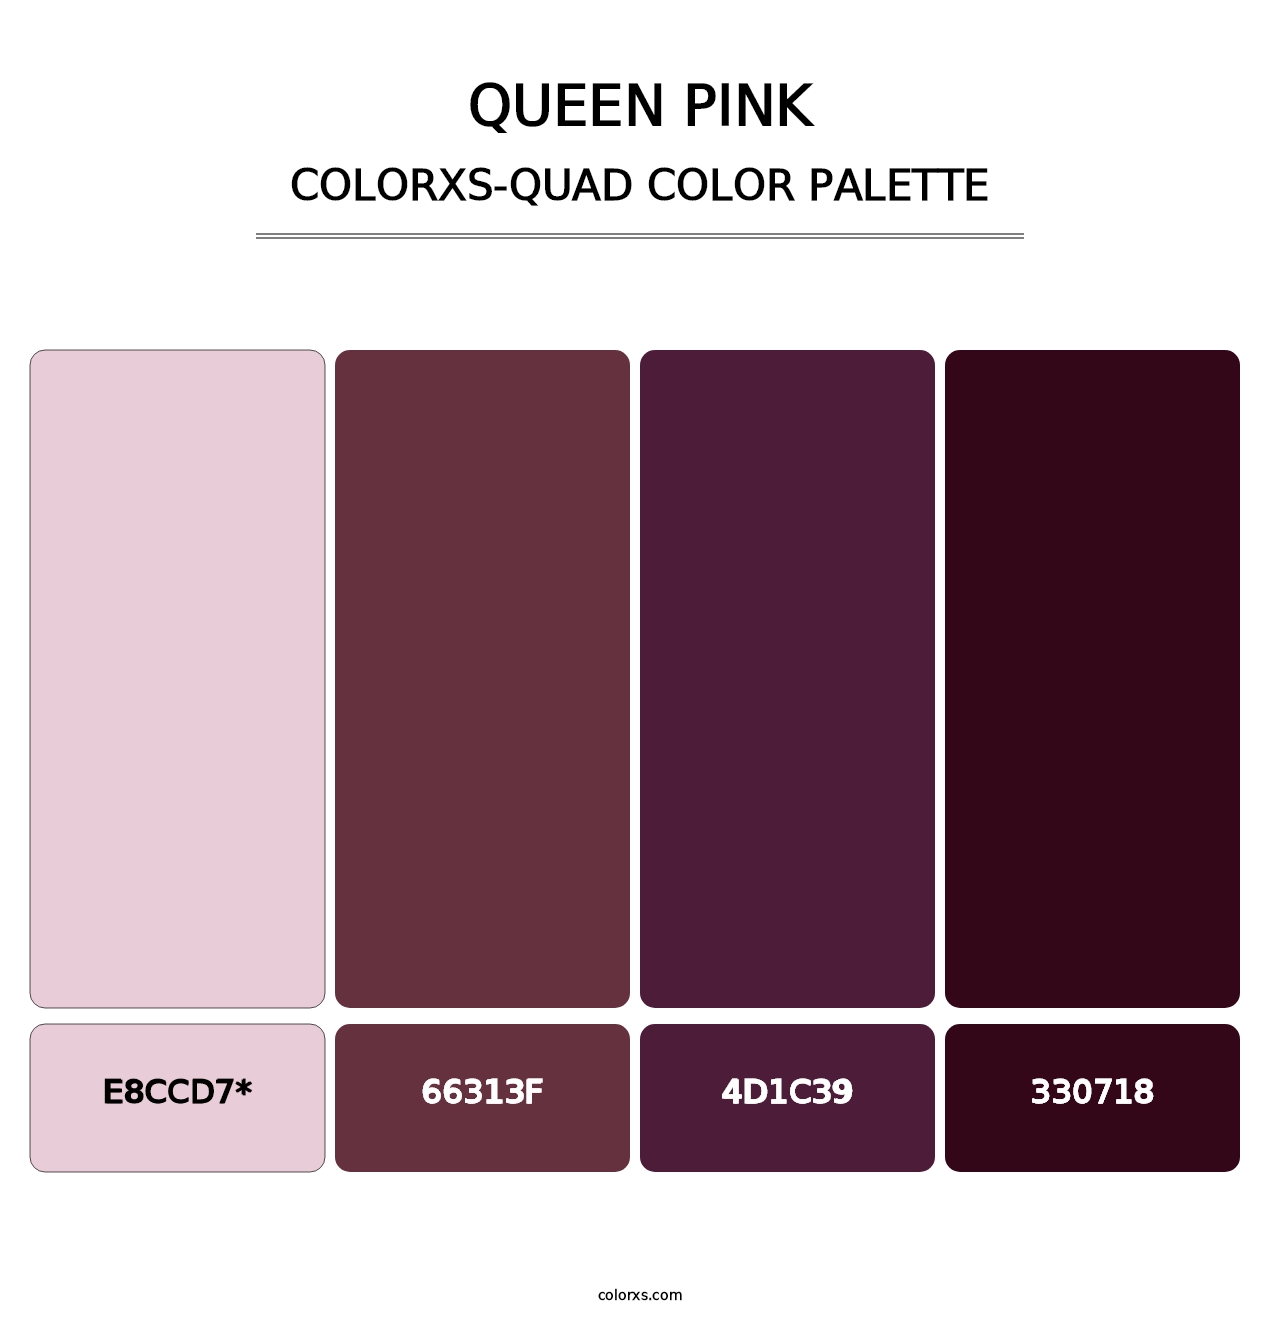 Queen Pink - Colorxs Quad Palette